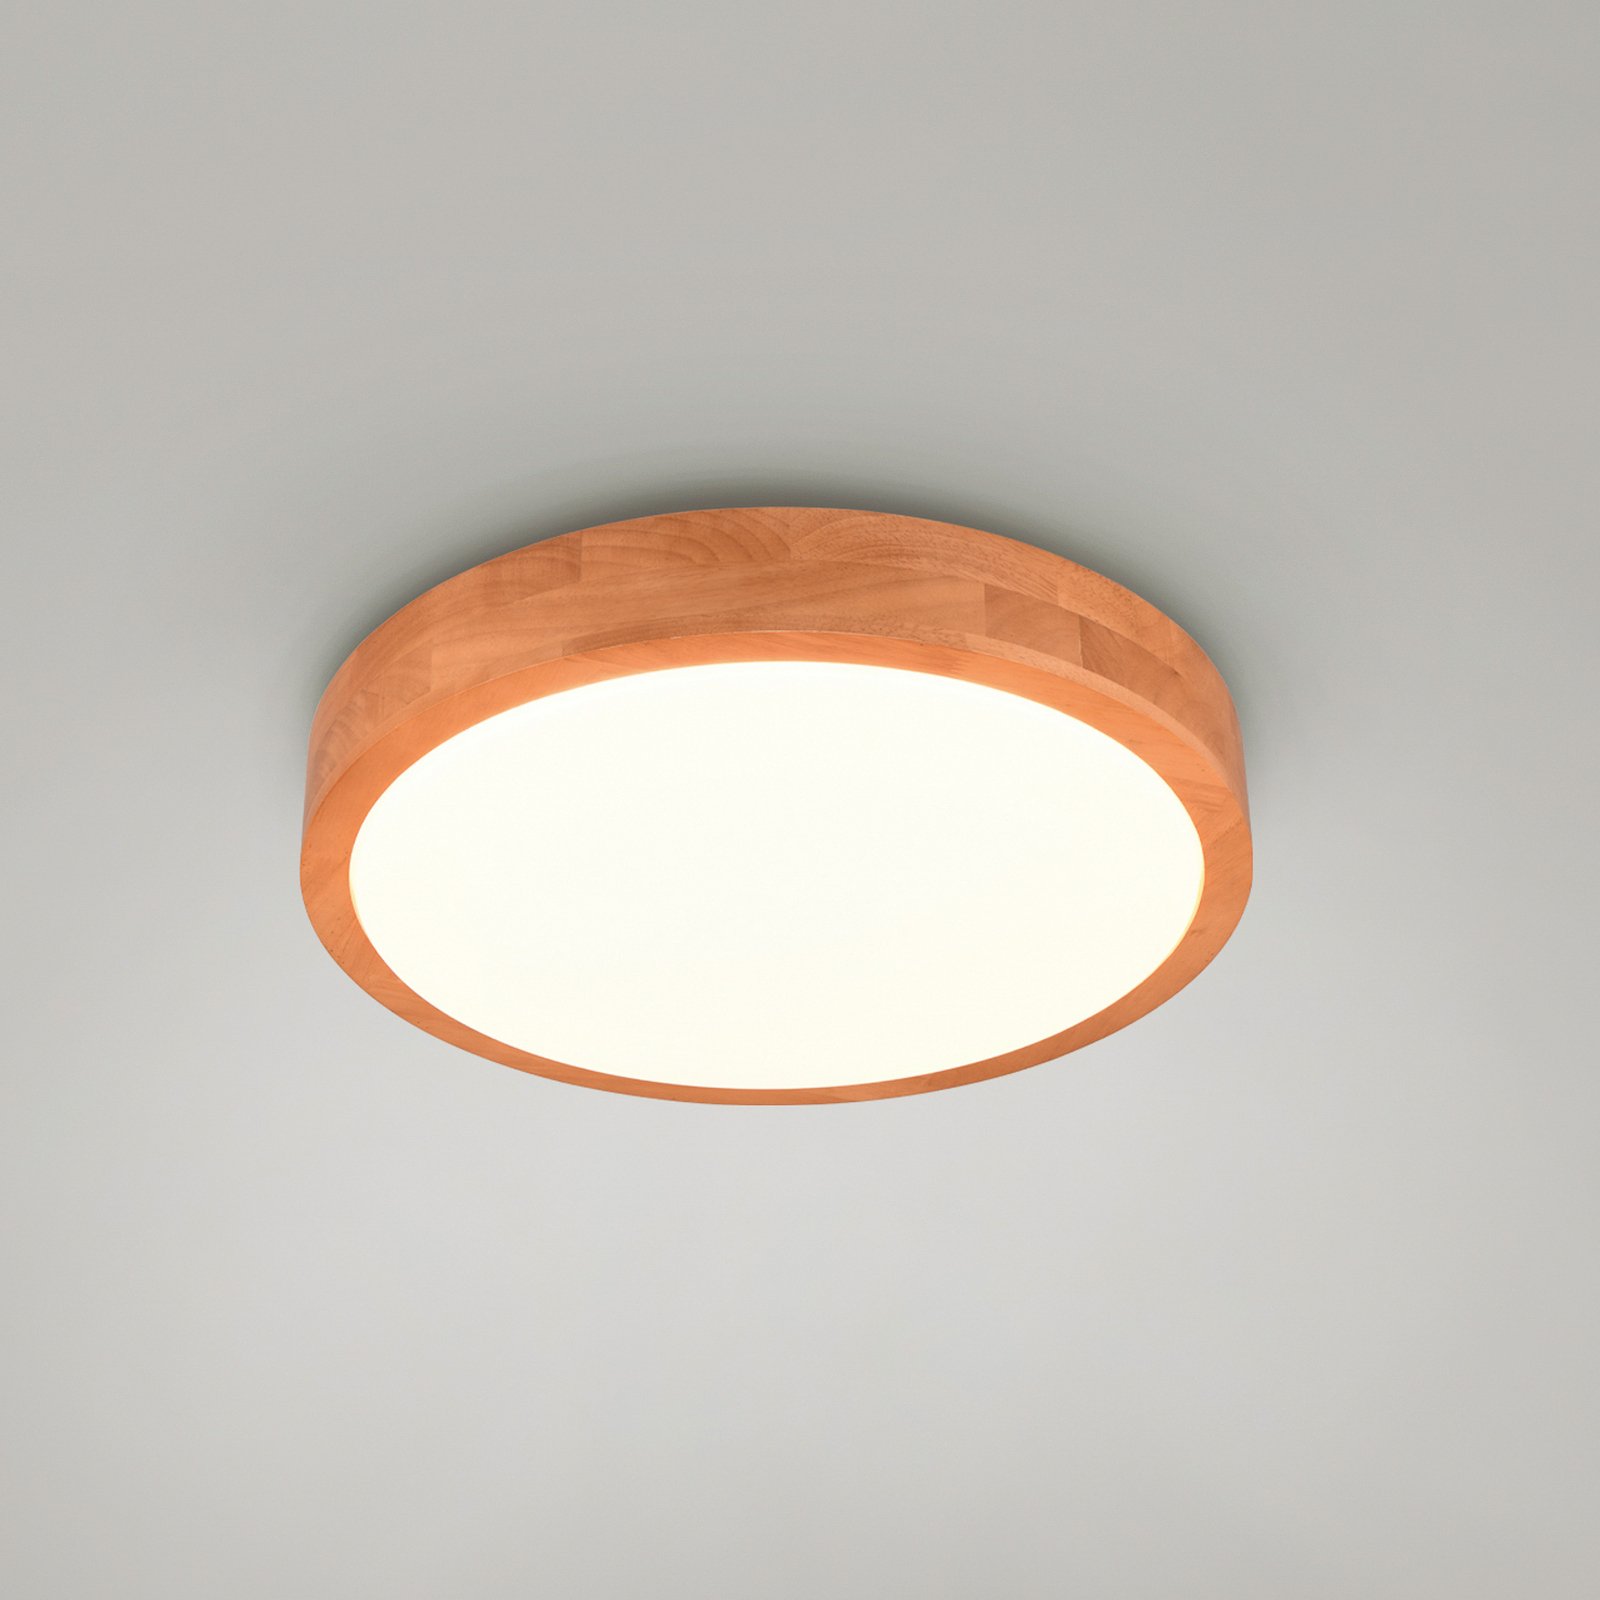 LED-taklampa Iseo, träfärgad, Ø 40 cm, dimbar, trä